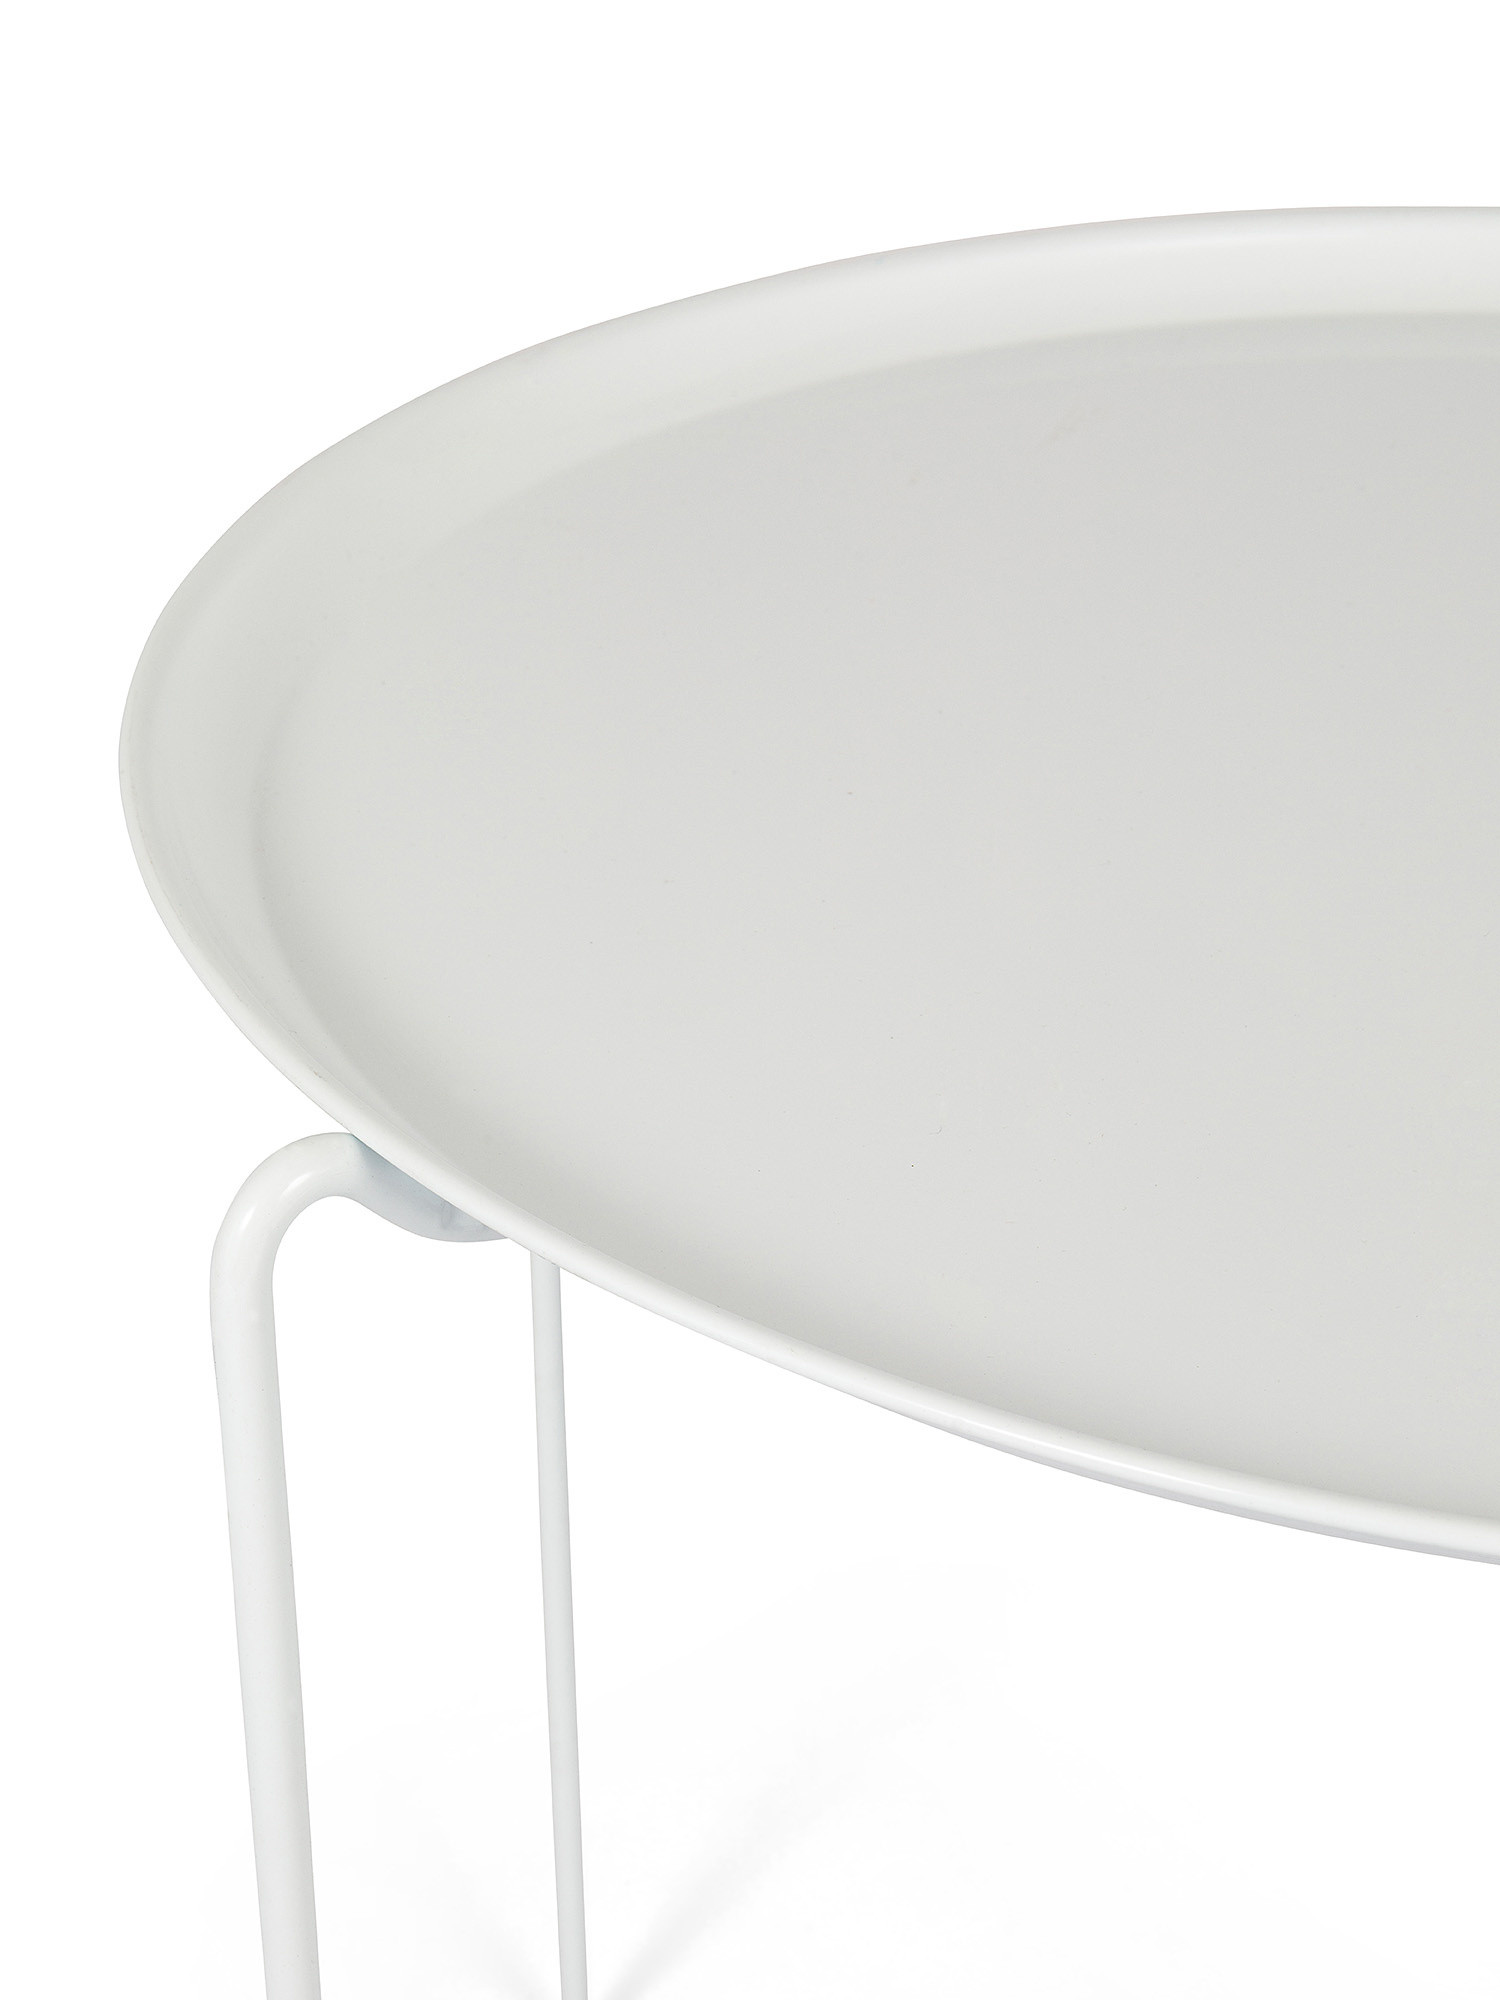 Tavolino da esterno in ferro Vassoio, Bianco, large image number 1